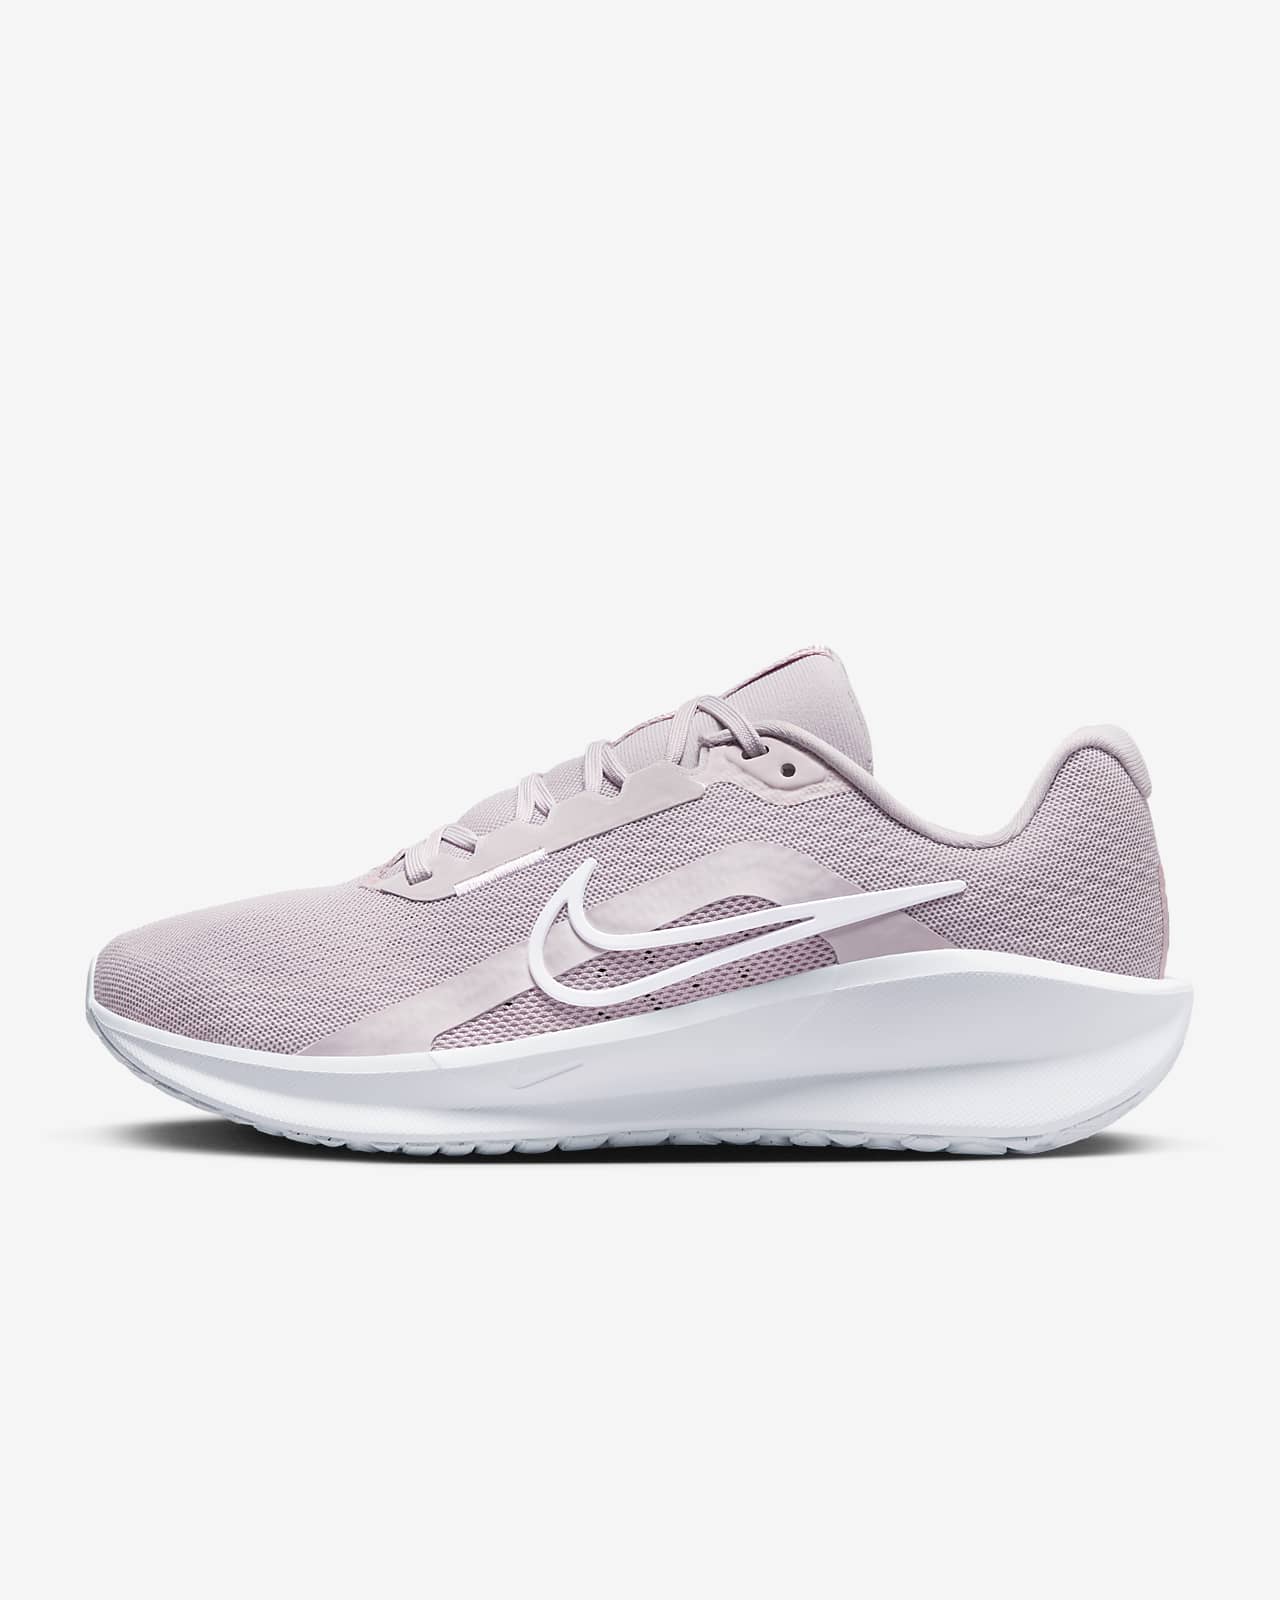 Γυναικεία παπούτσια για τρέξιμο σε δρόμο Nike Downshifter 13